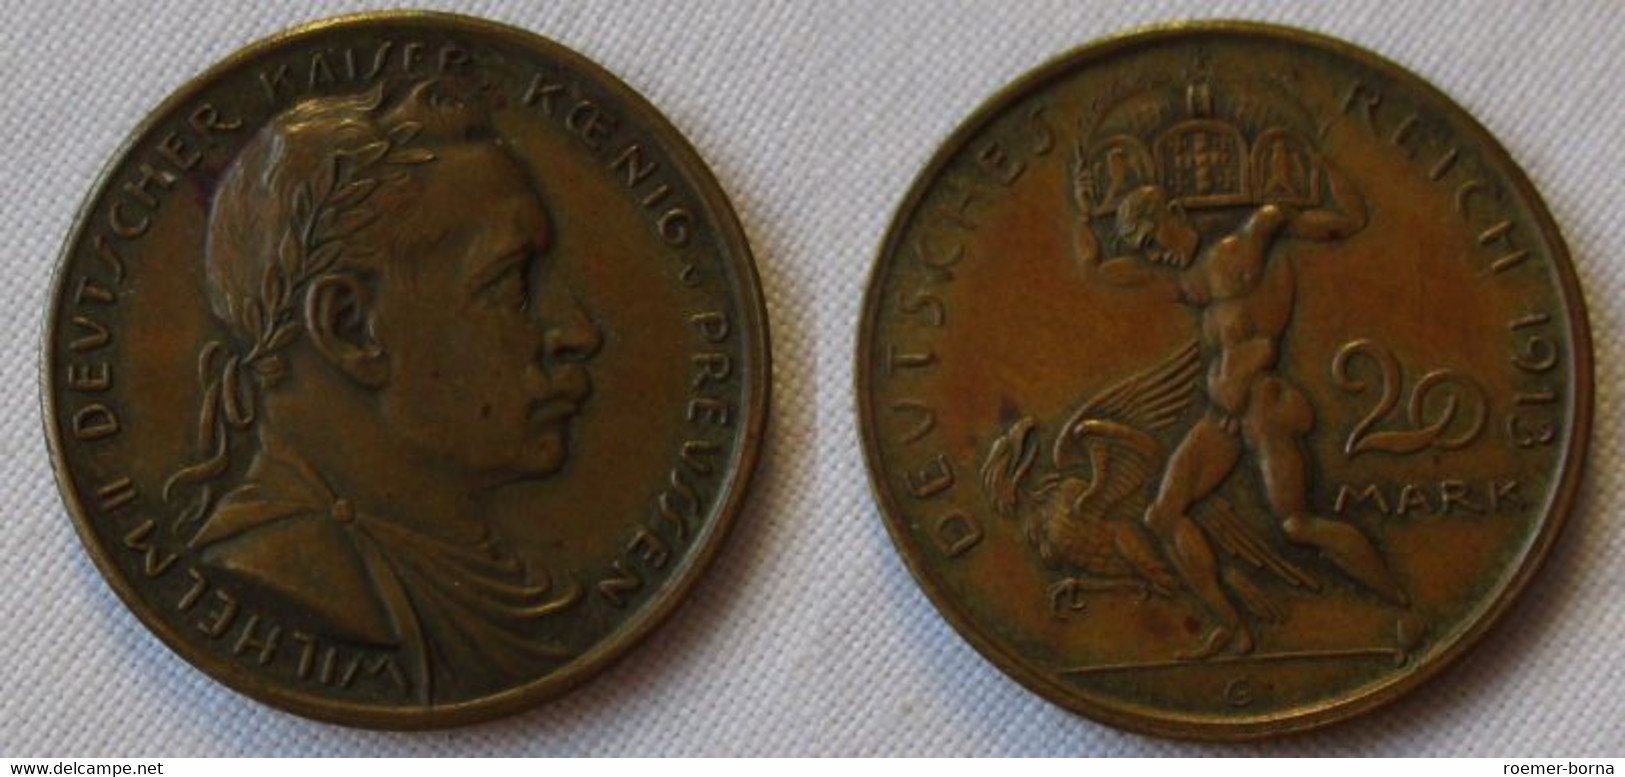 20 Mark Probeprägung Deutsches Reich Wilhelm II. Preussen - Karl Goetz (120161) - 5, 10 & 20 Mark Oro